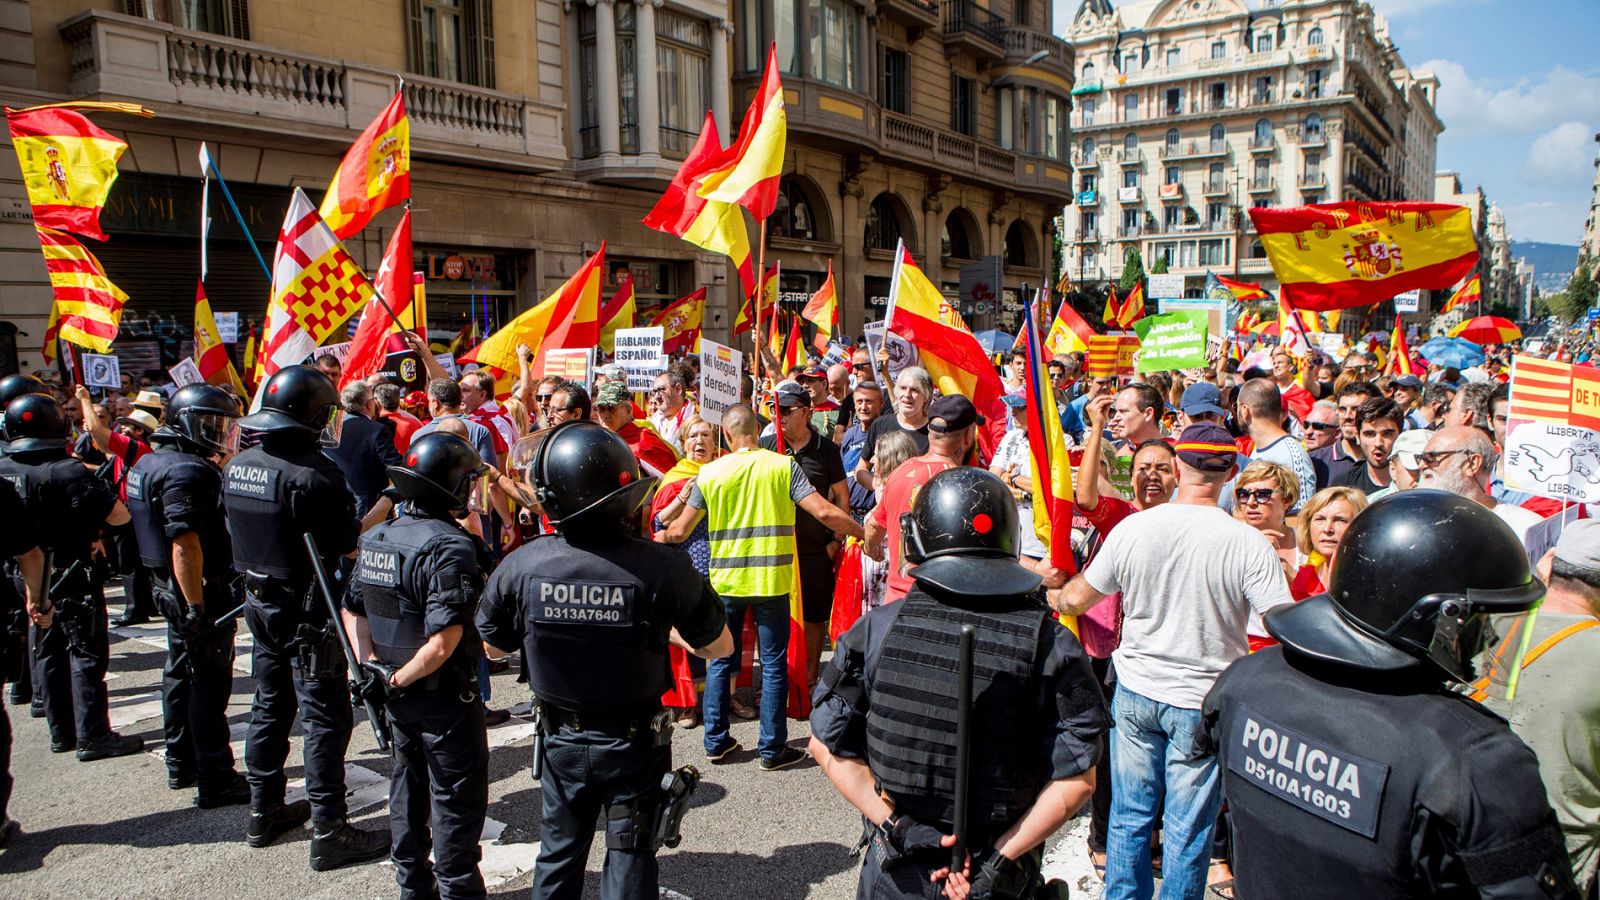 Tensión en Barcelona al coincidir manifestaciones opuestas